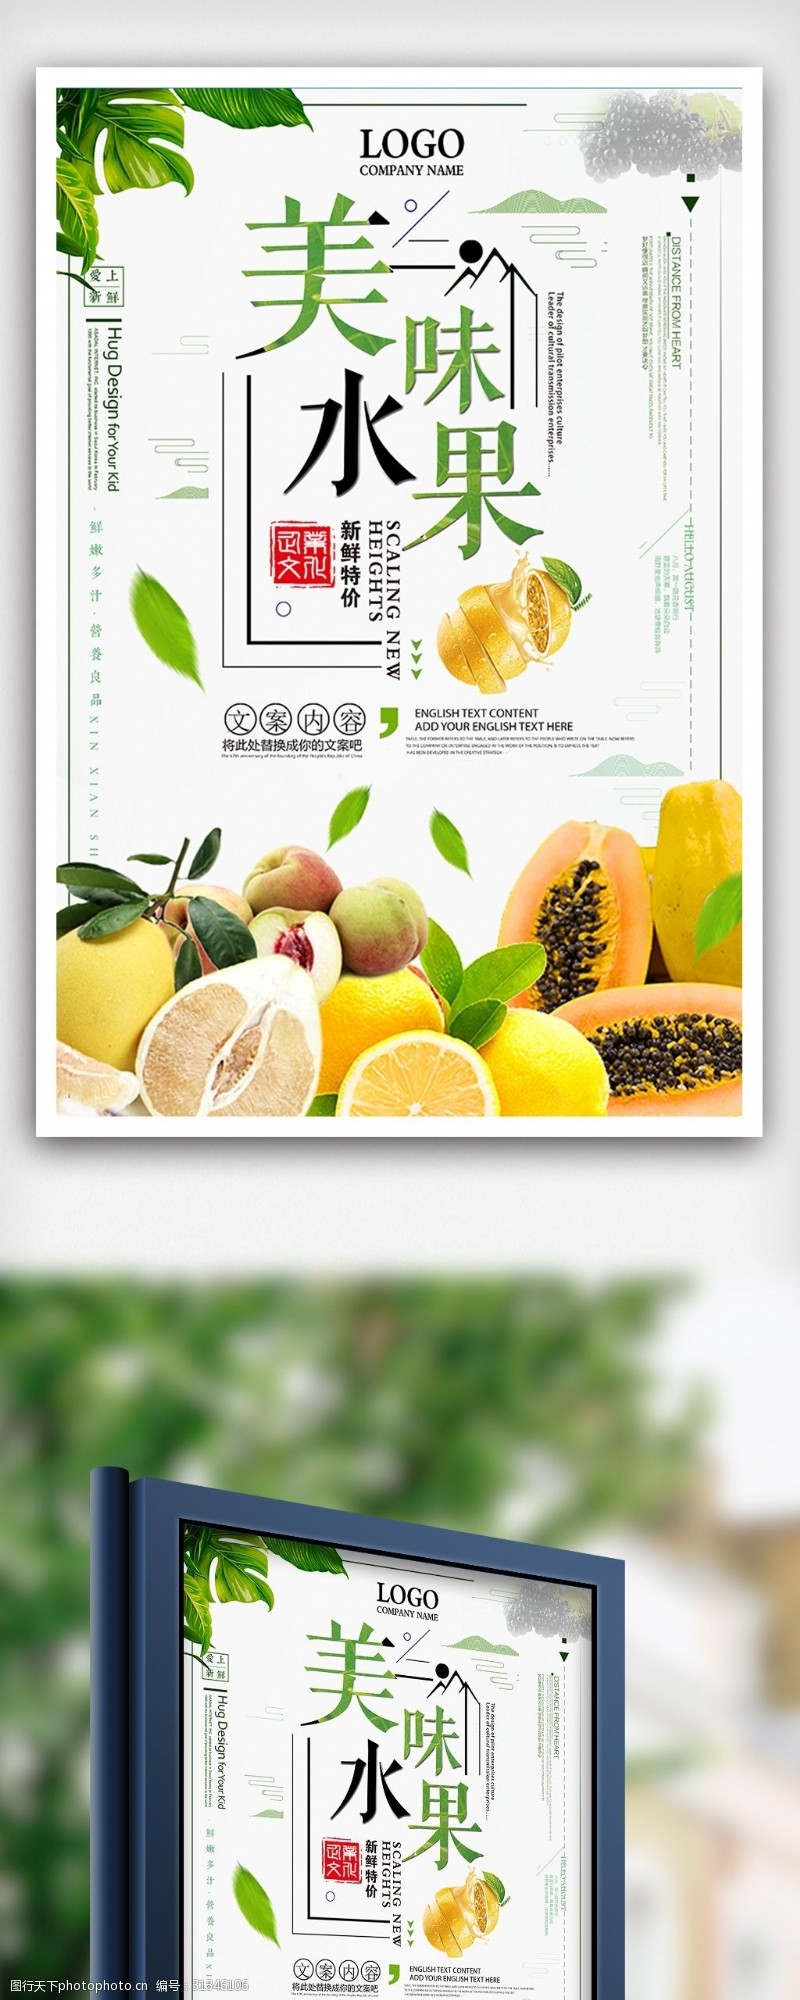 特价图片免费下载夏季美味水果特价促销海报设计